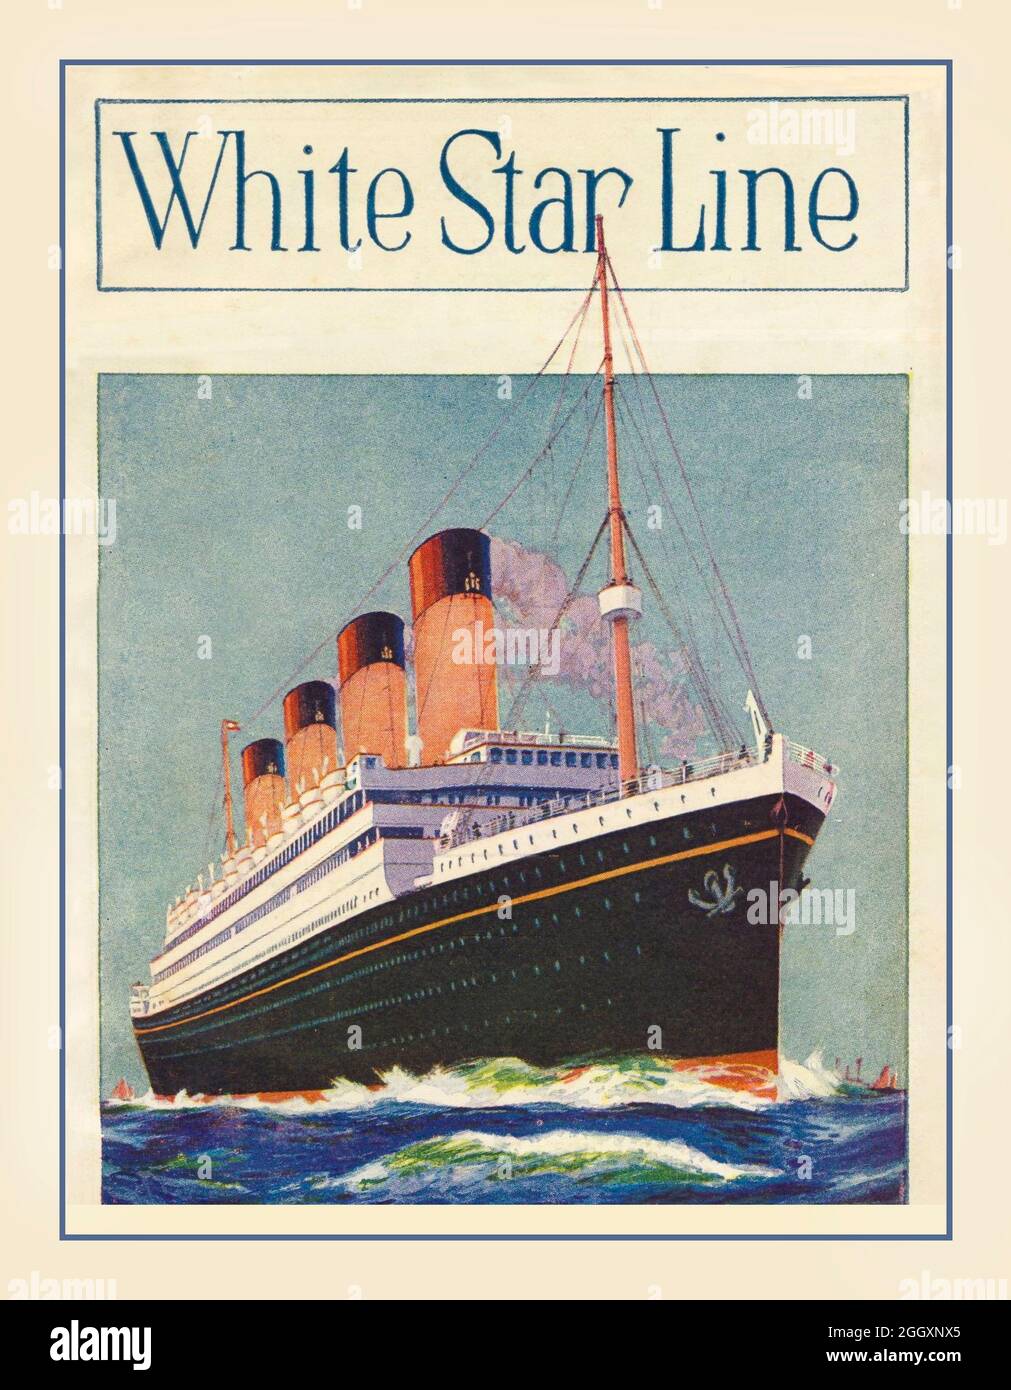 Vintage 1926 White Star Line RMS Titanic/ RMS Olympic Ocean Liners (navi gemelle identiche) semplice illustrazione watercolor poster pubblicitario Foto Stock